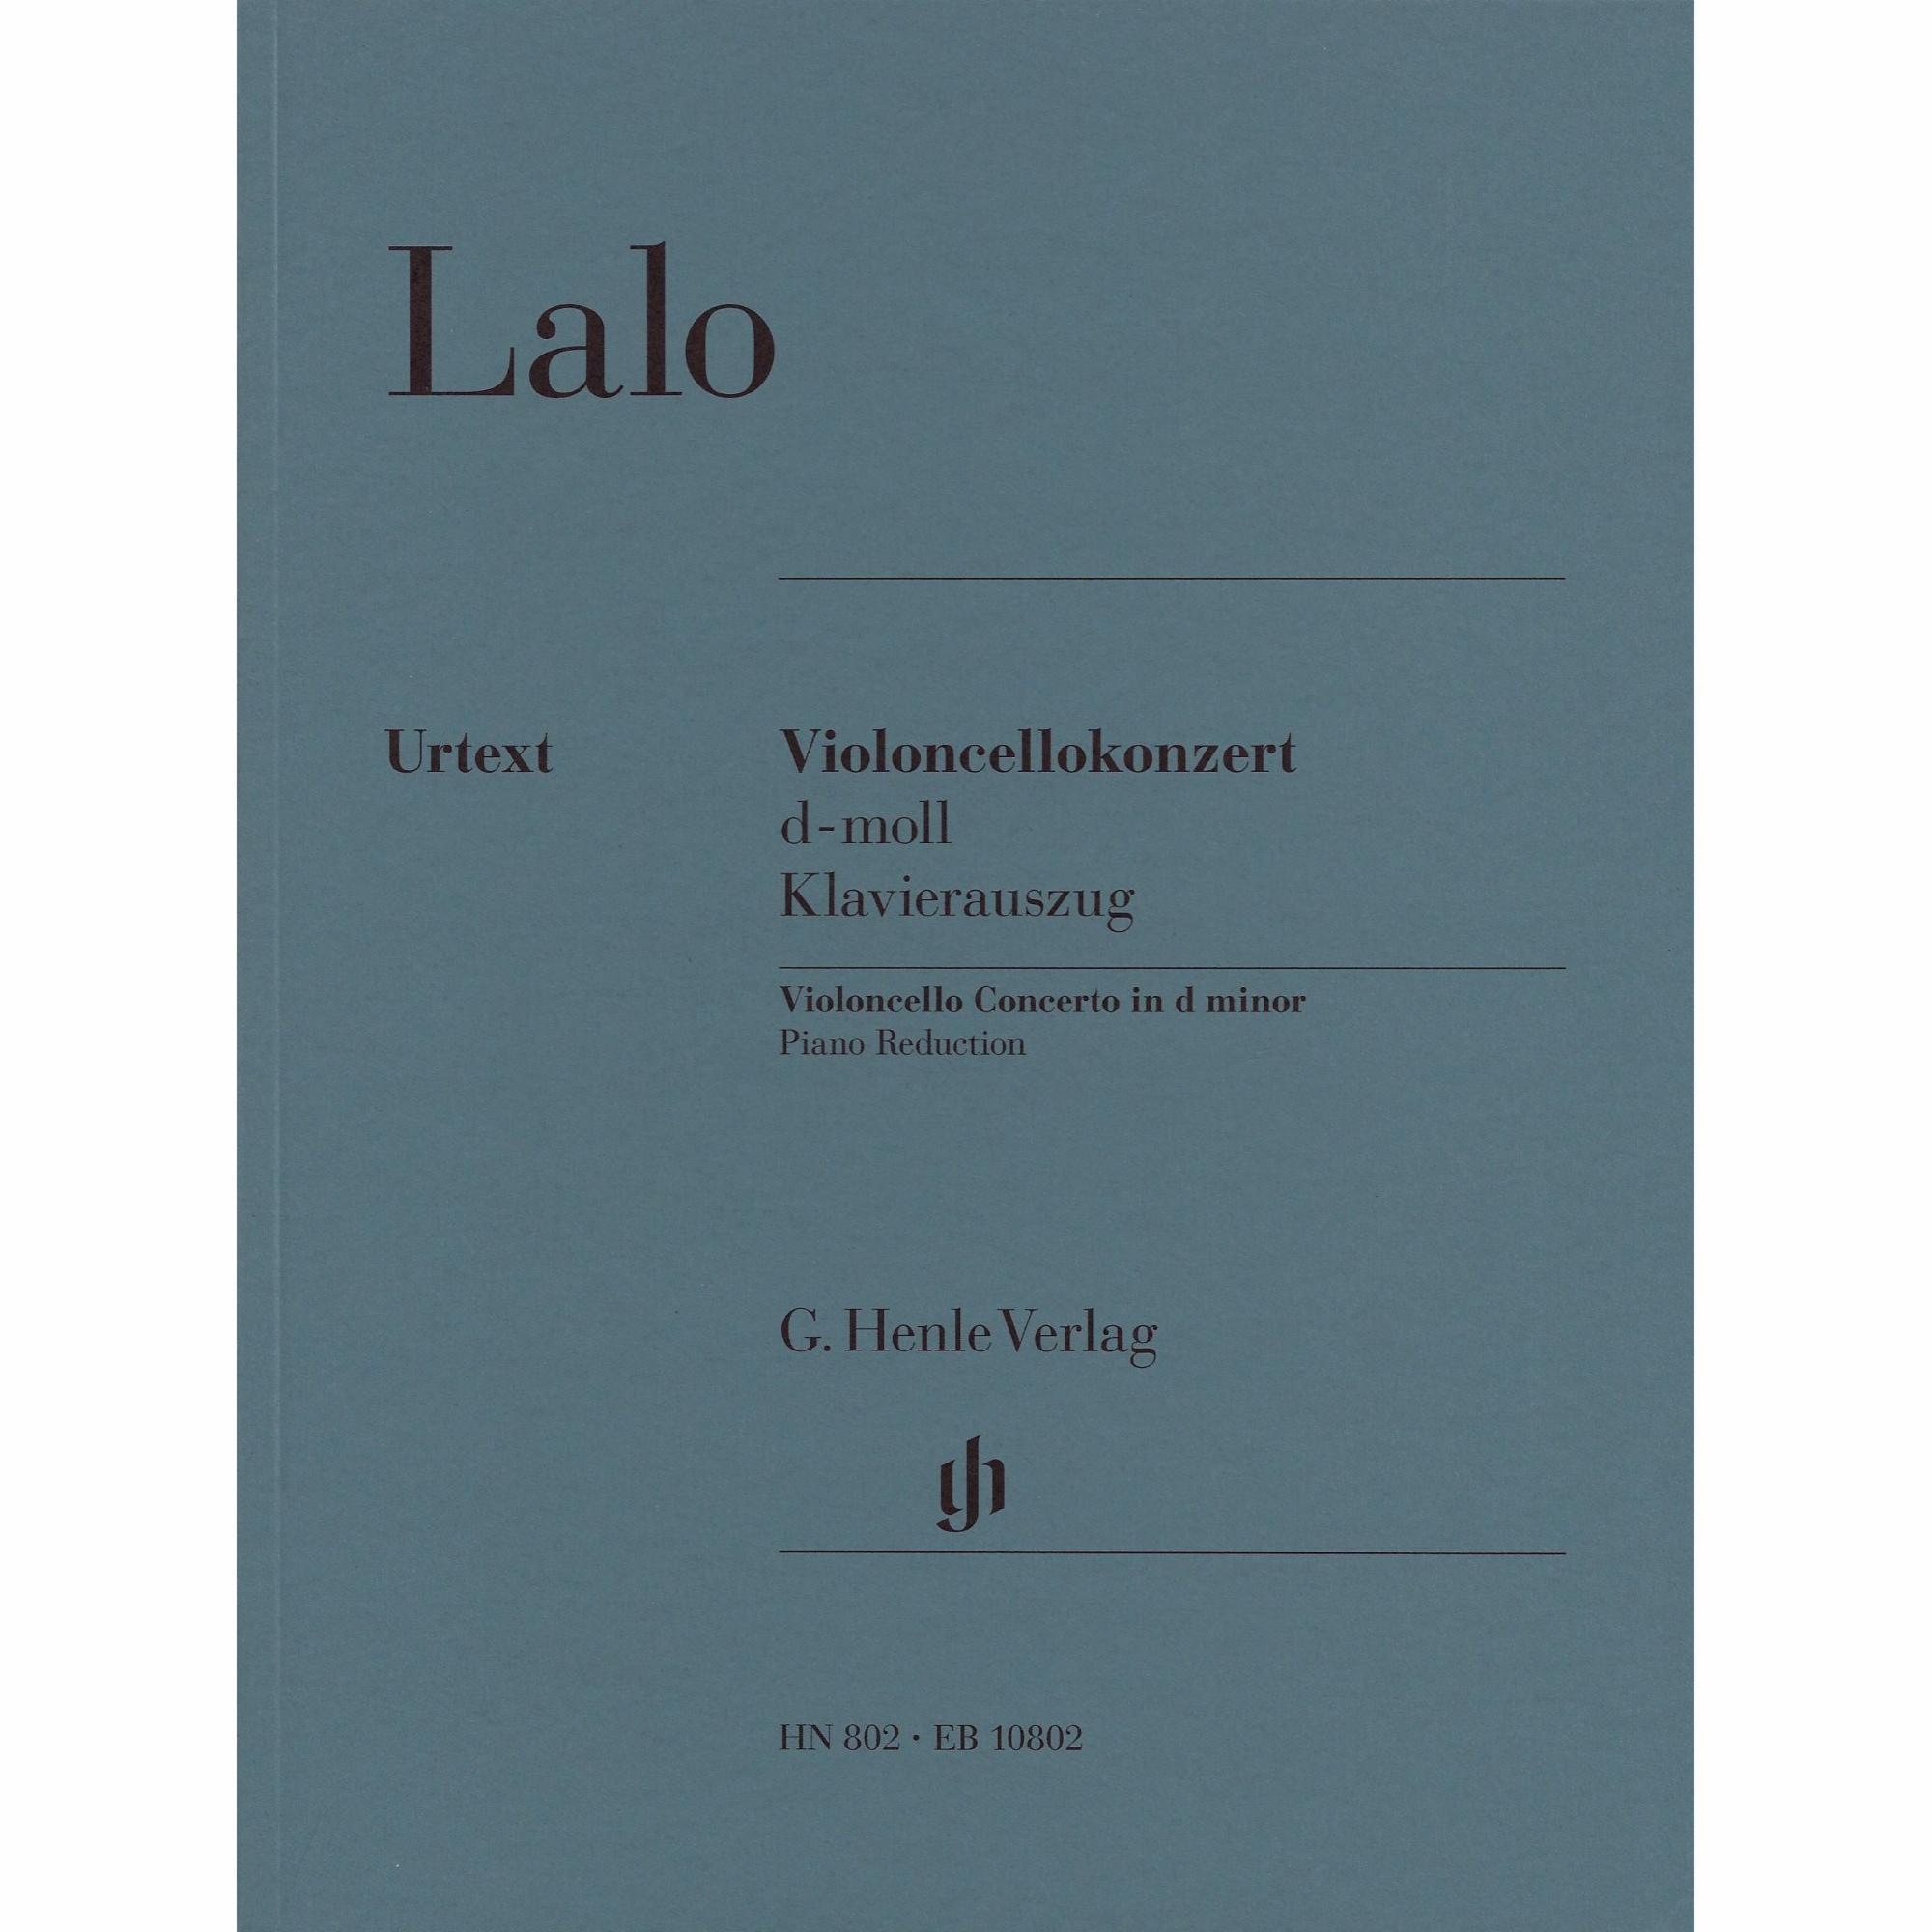 Lalo -- Cello Concerto in D Minor